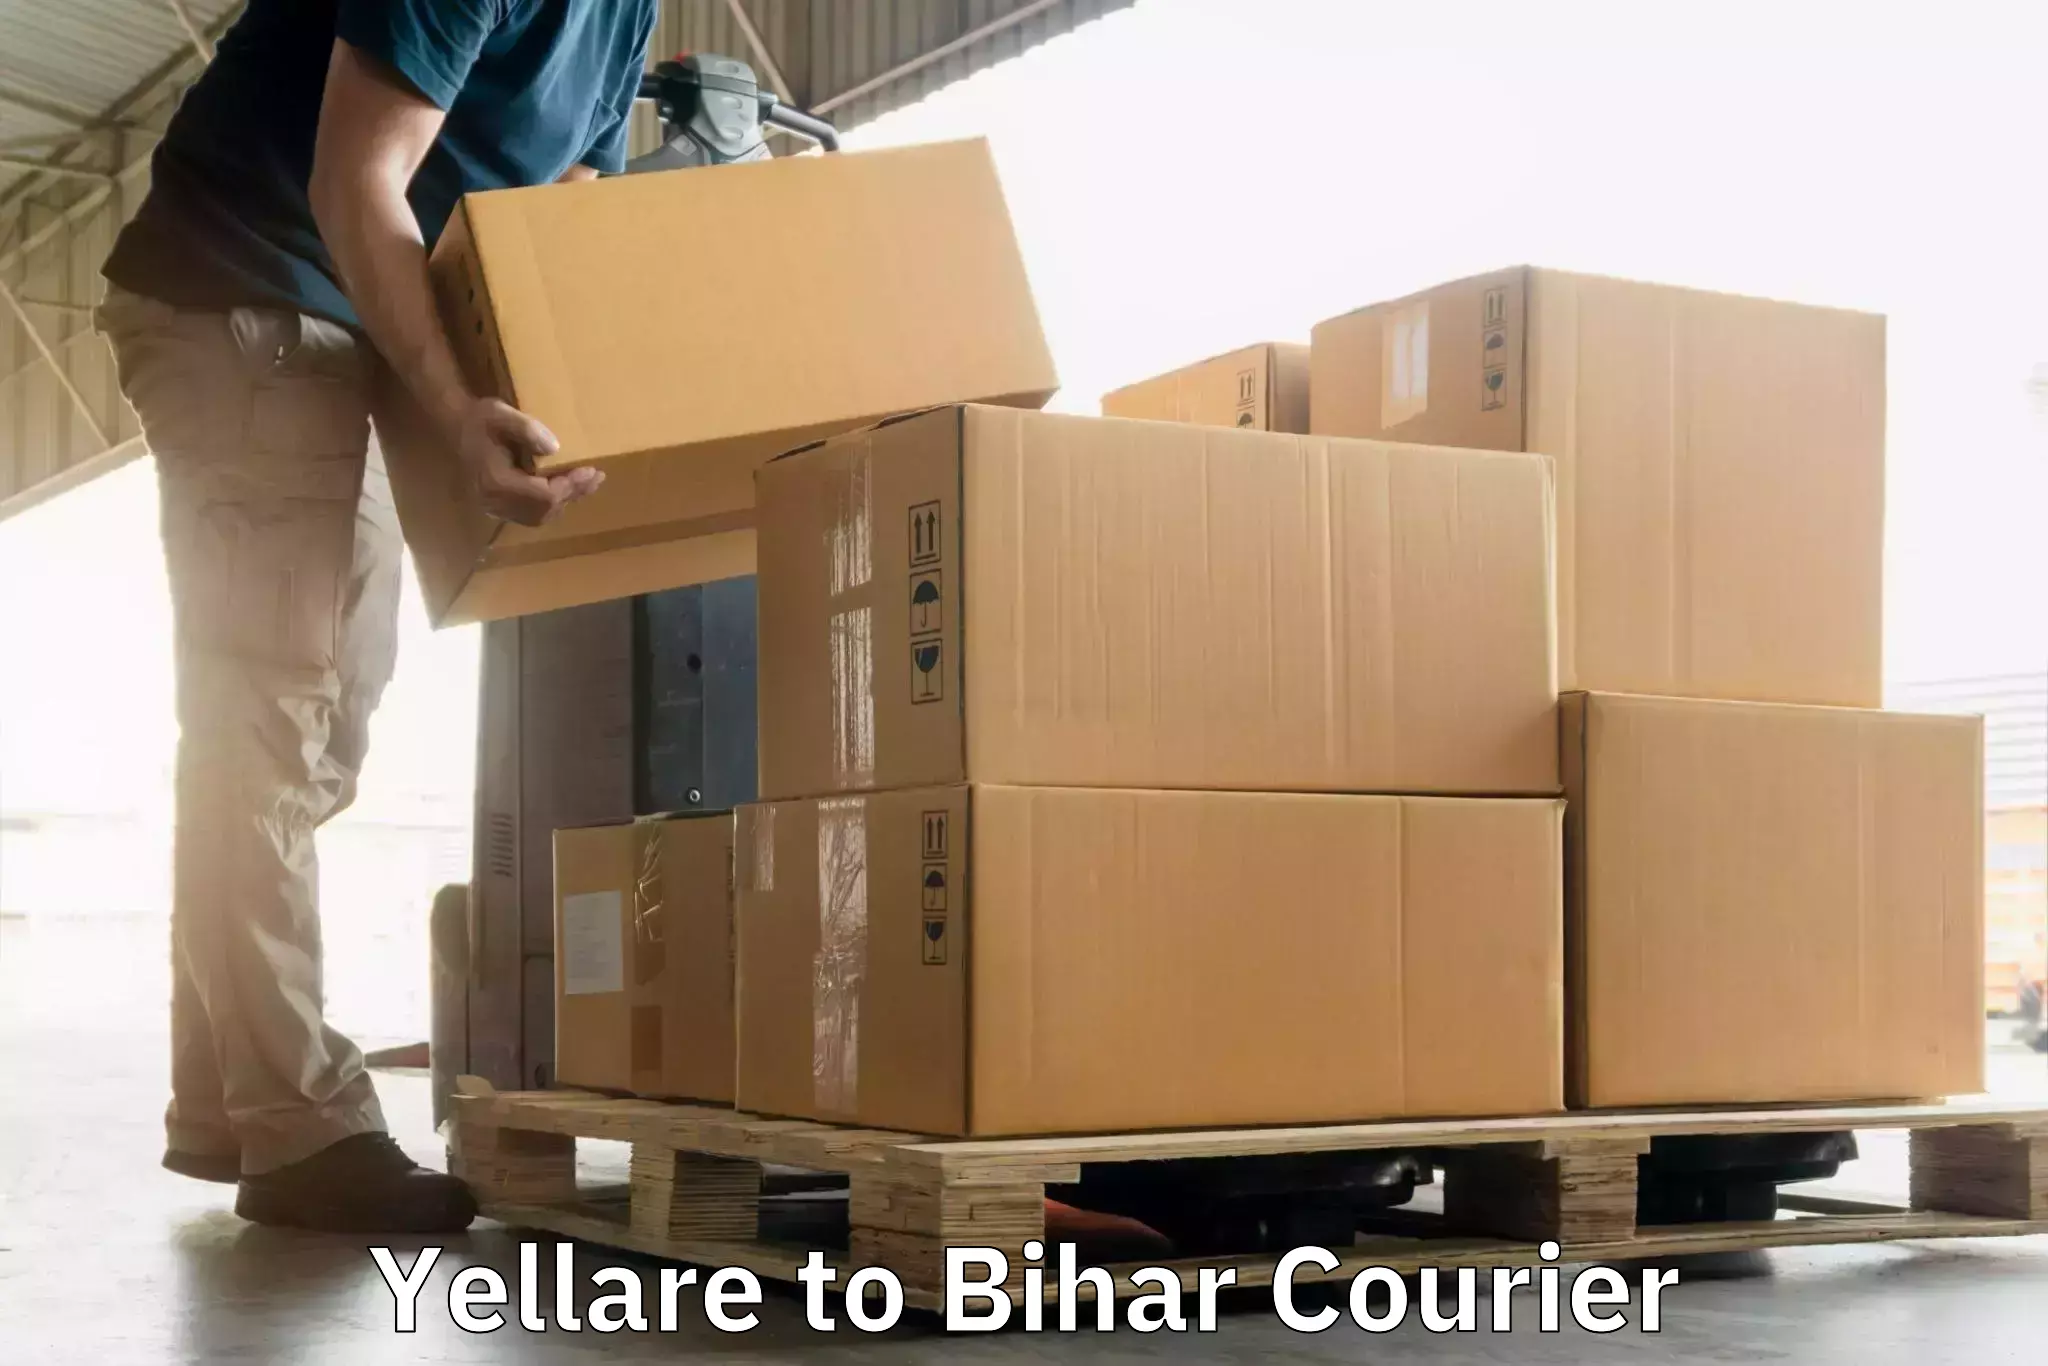 Courier service partnerships Yellare to Narkatiaganj